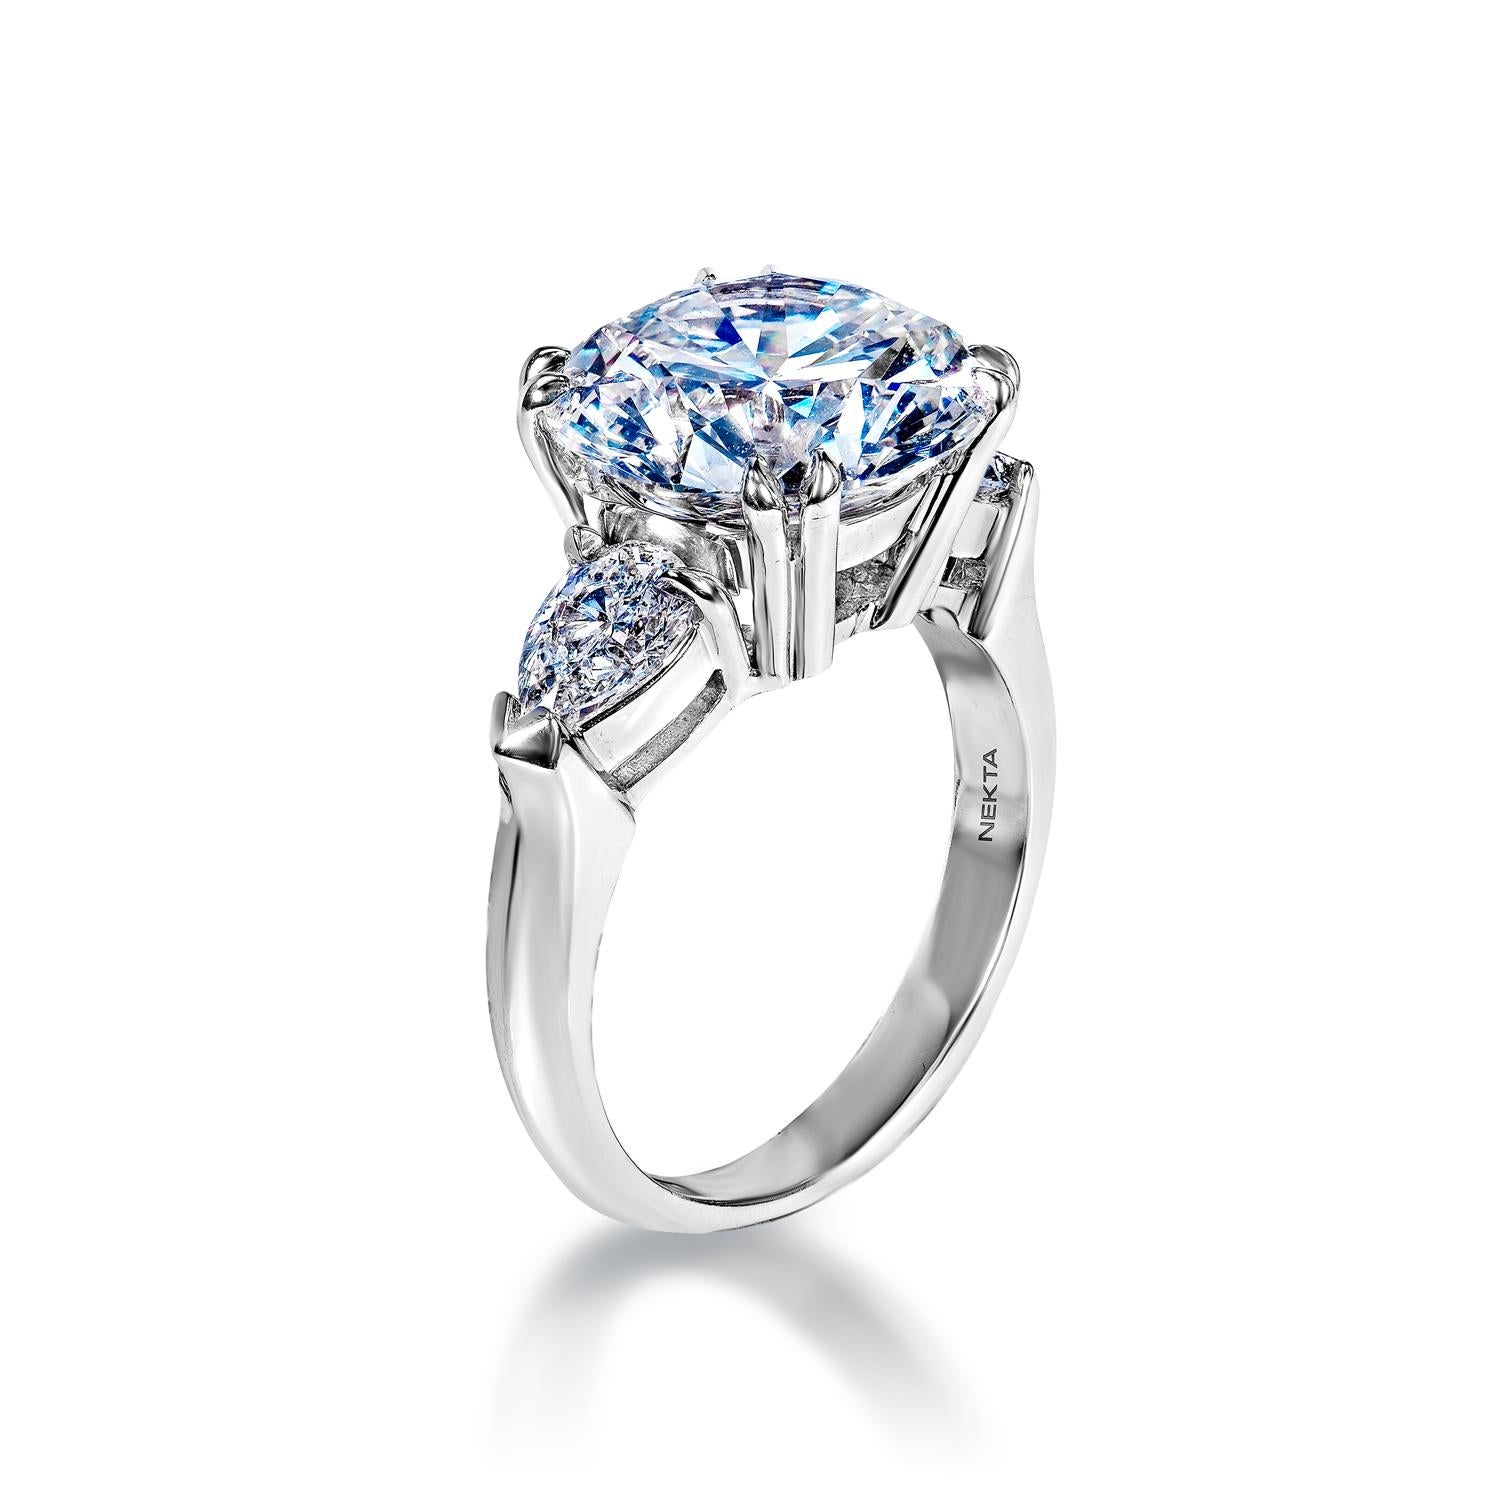 7 carat diamond ring price uk